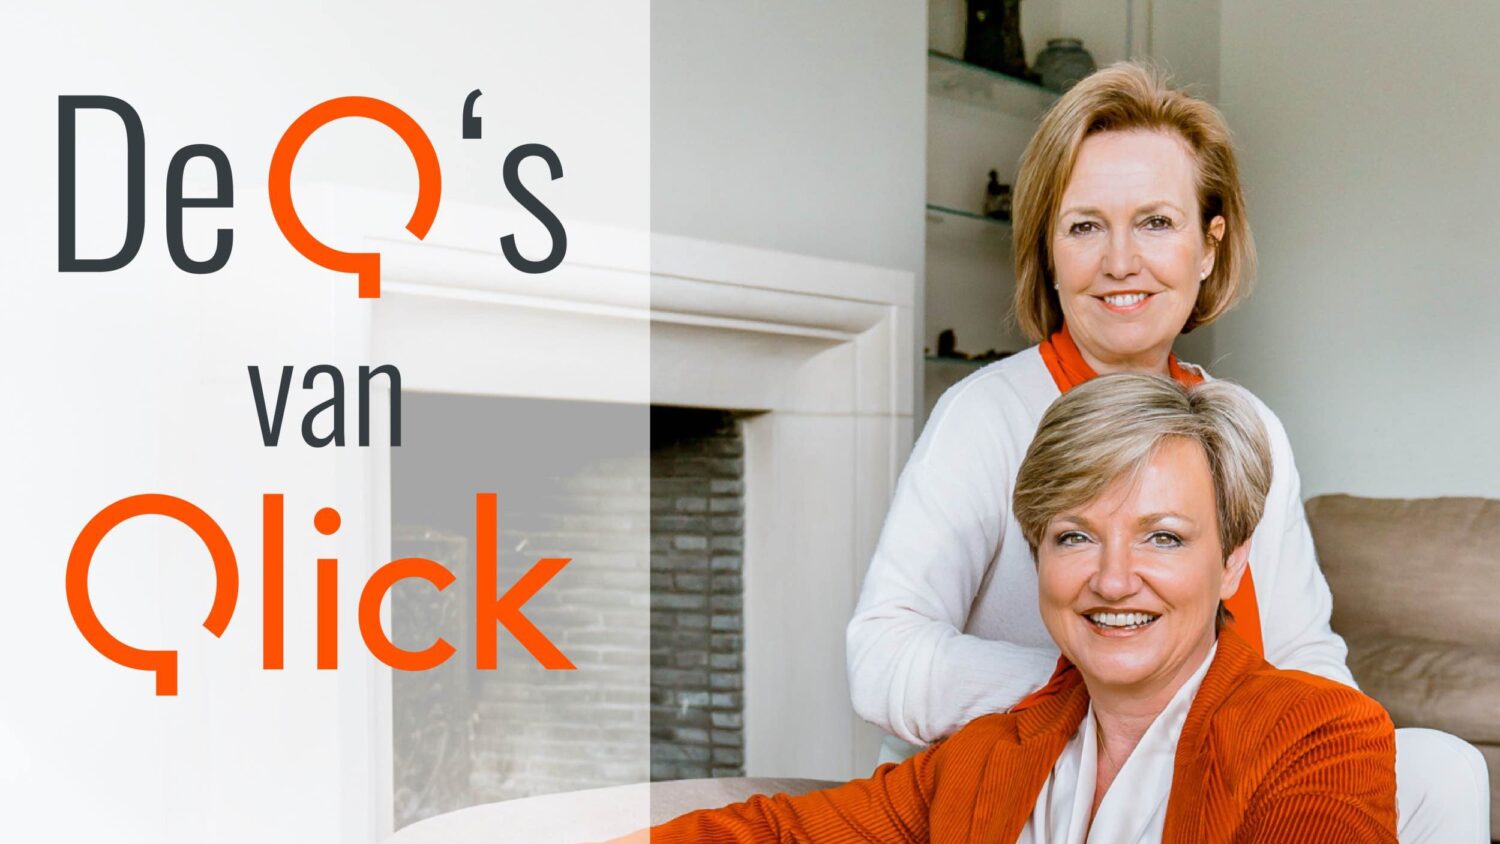 Twee personen lachen in een lichte kamer. Oranje en witte kleuren domineren. Tekst "De Q's van Qlick" verschijnt op de afbeelding.